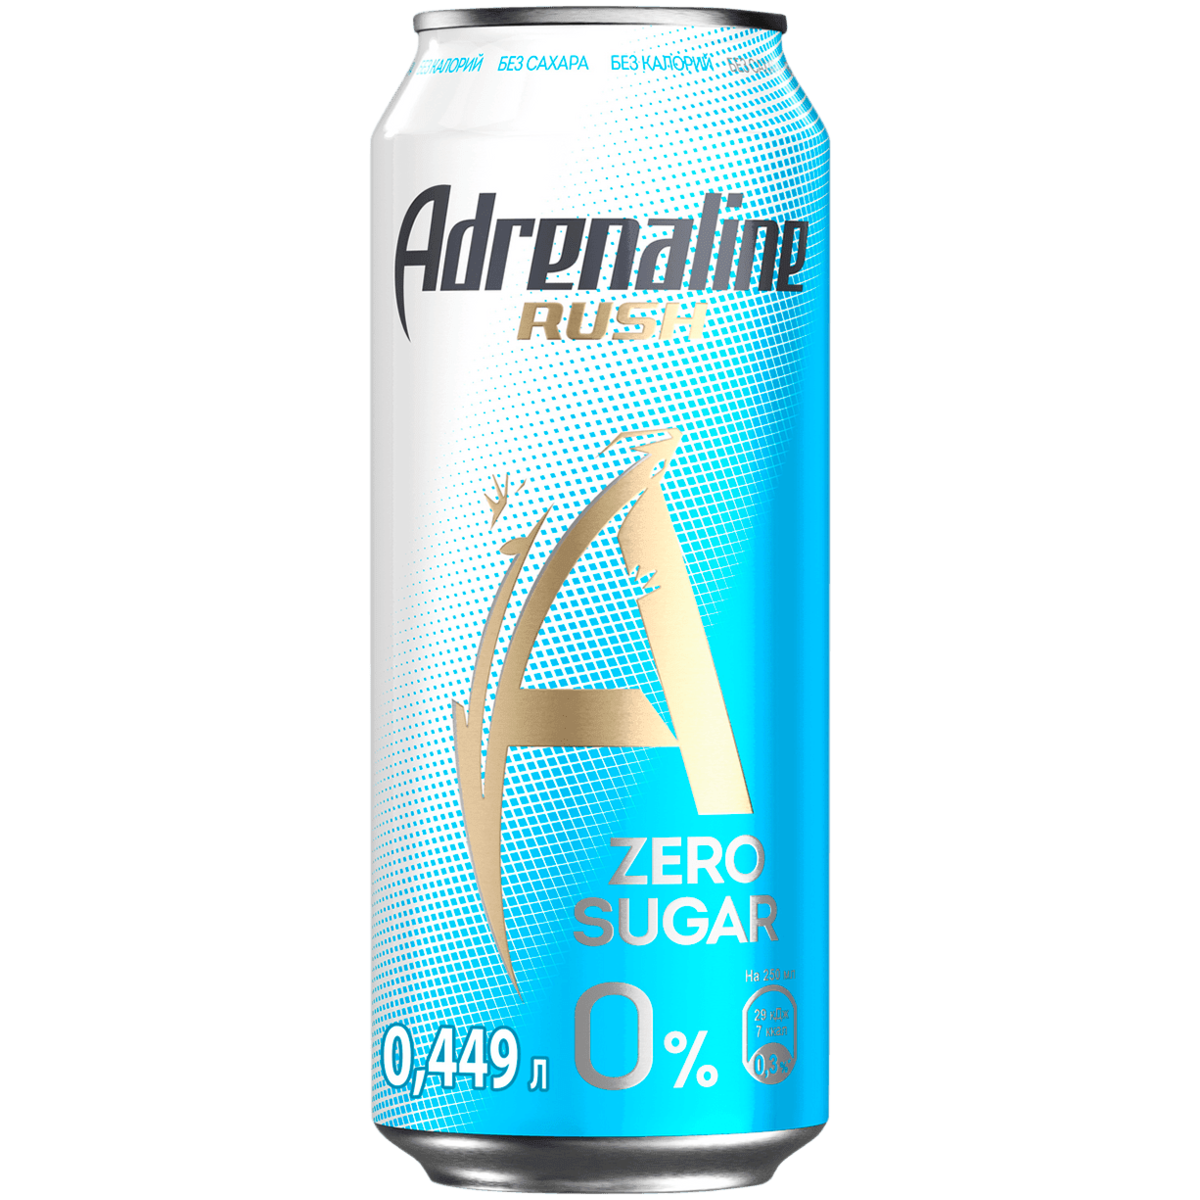 Энергетический напиток Adrenaline Rush без сахара,449 мл. Напиток энергетический адреналин ж/б 0,449л Rush. Адреналин Раш без сахара. Энергетик Adrenalin Rush, 0,449 л.